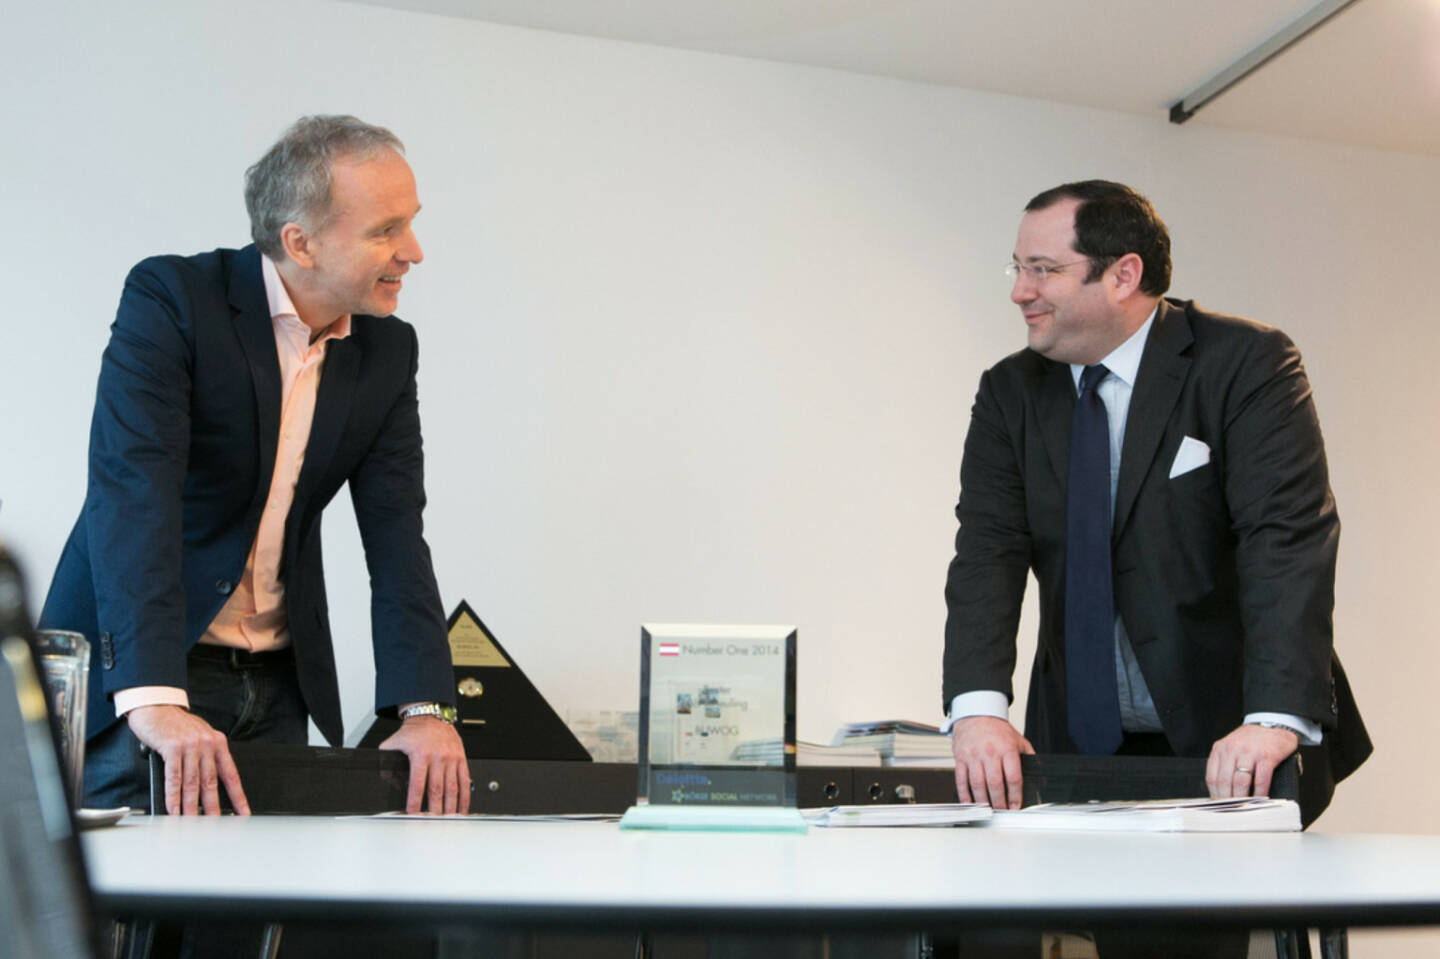 Christian Drastil übergibt im Namen von Deloitte und BSN den Number One Award für den Börseneuling des Jahres 2014 an Buwog-CEO Daniel Riedl  - mehr zu den Awards unter http://photaq.com/page/index/1685